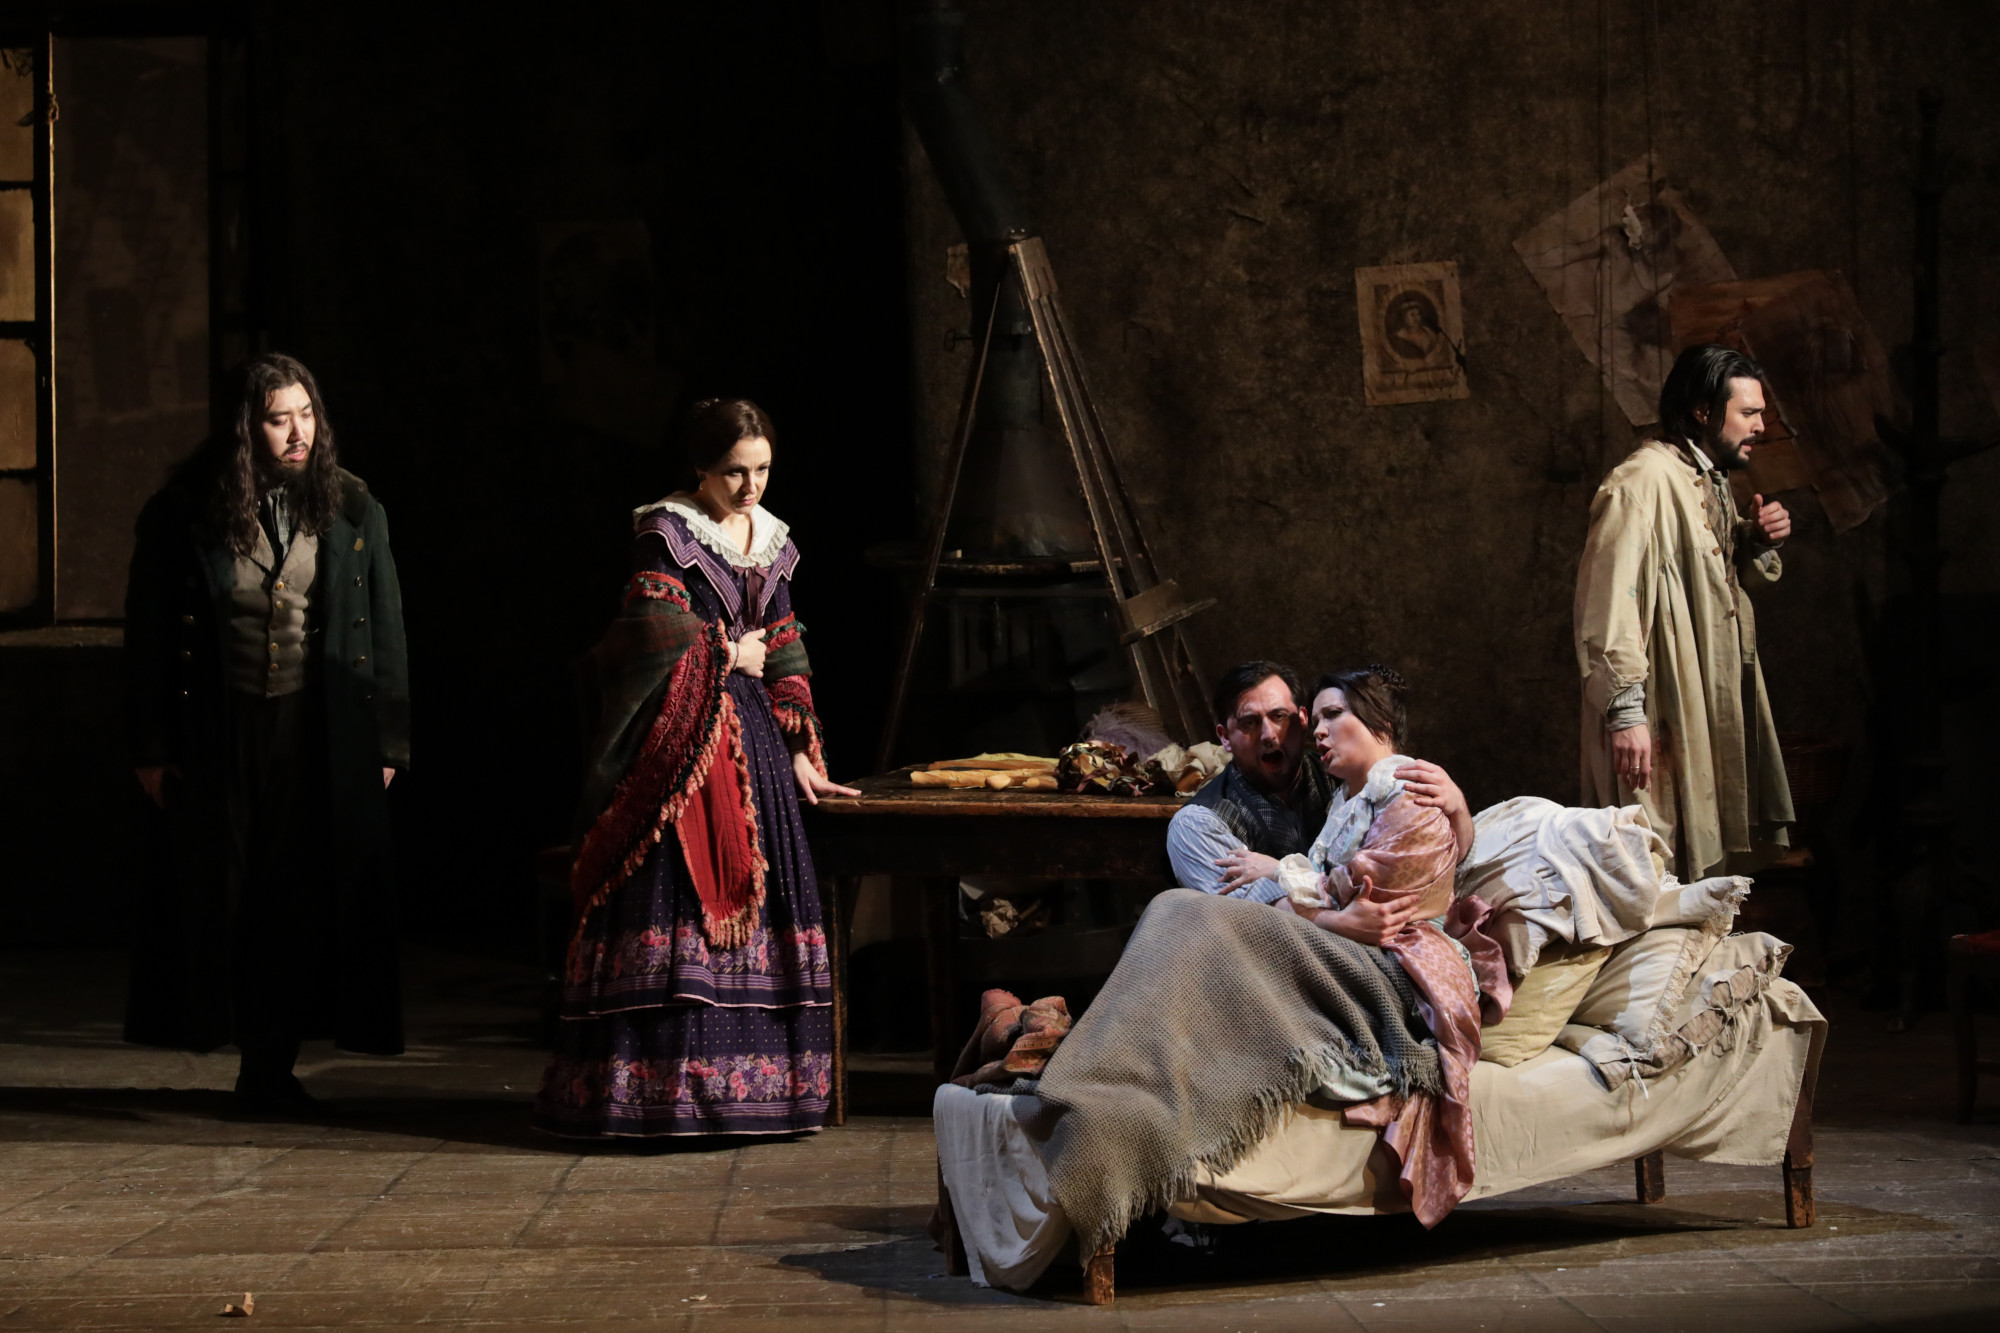 Una escena de "La bohème" en el Teatro alla Scala / Foto: © Brescia e Amisano / Teatro alla Scala